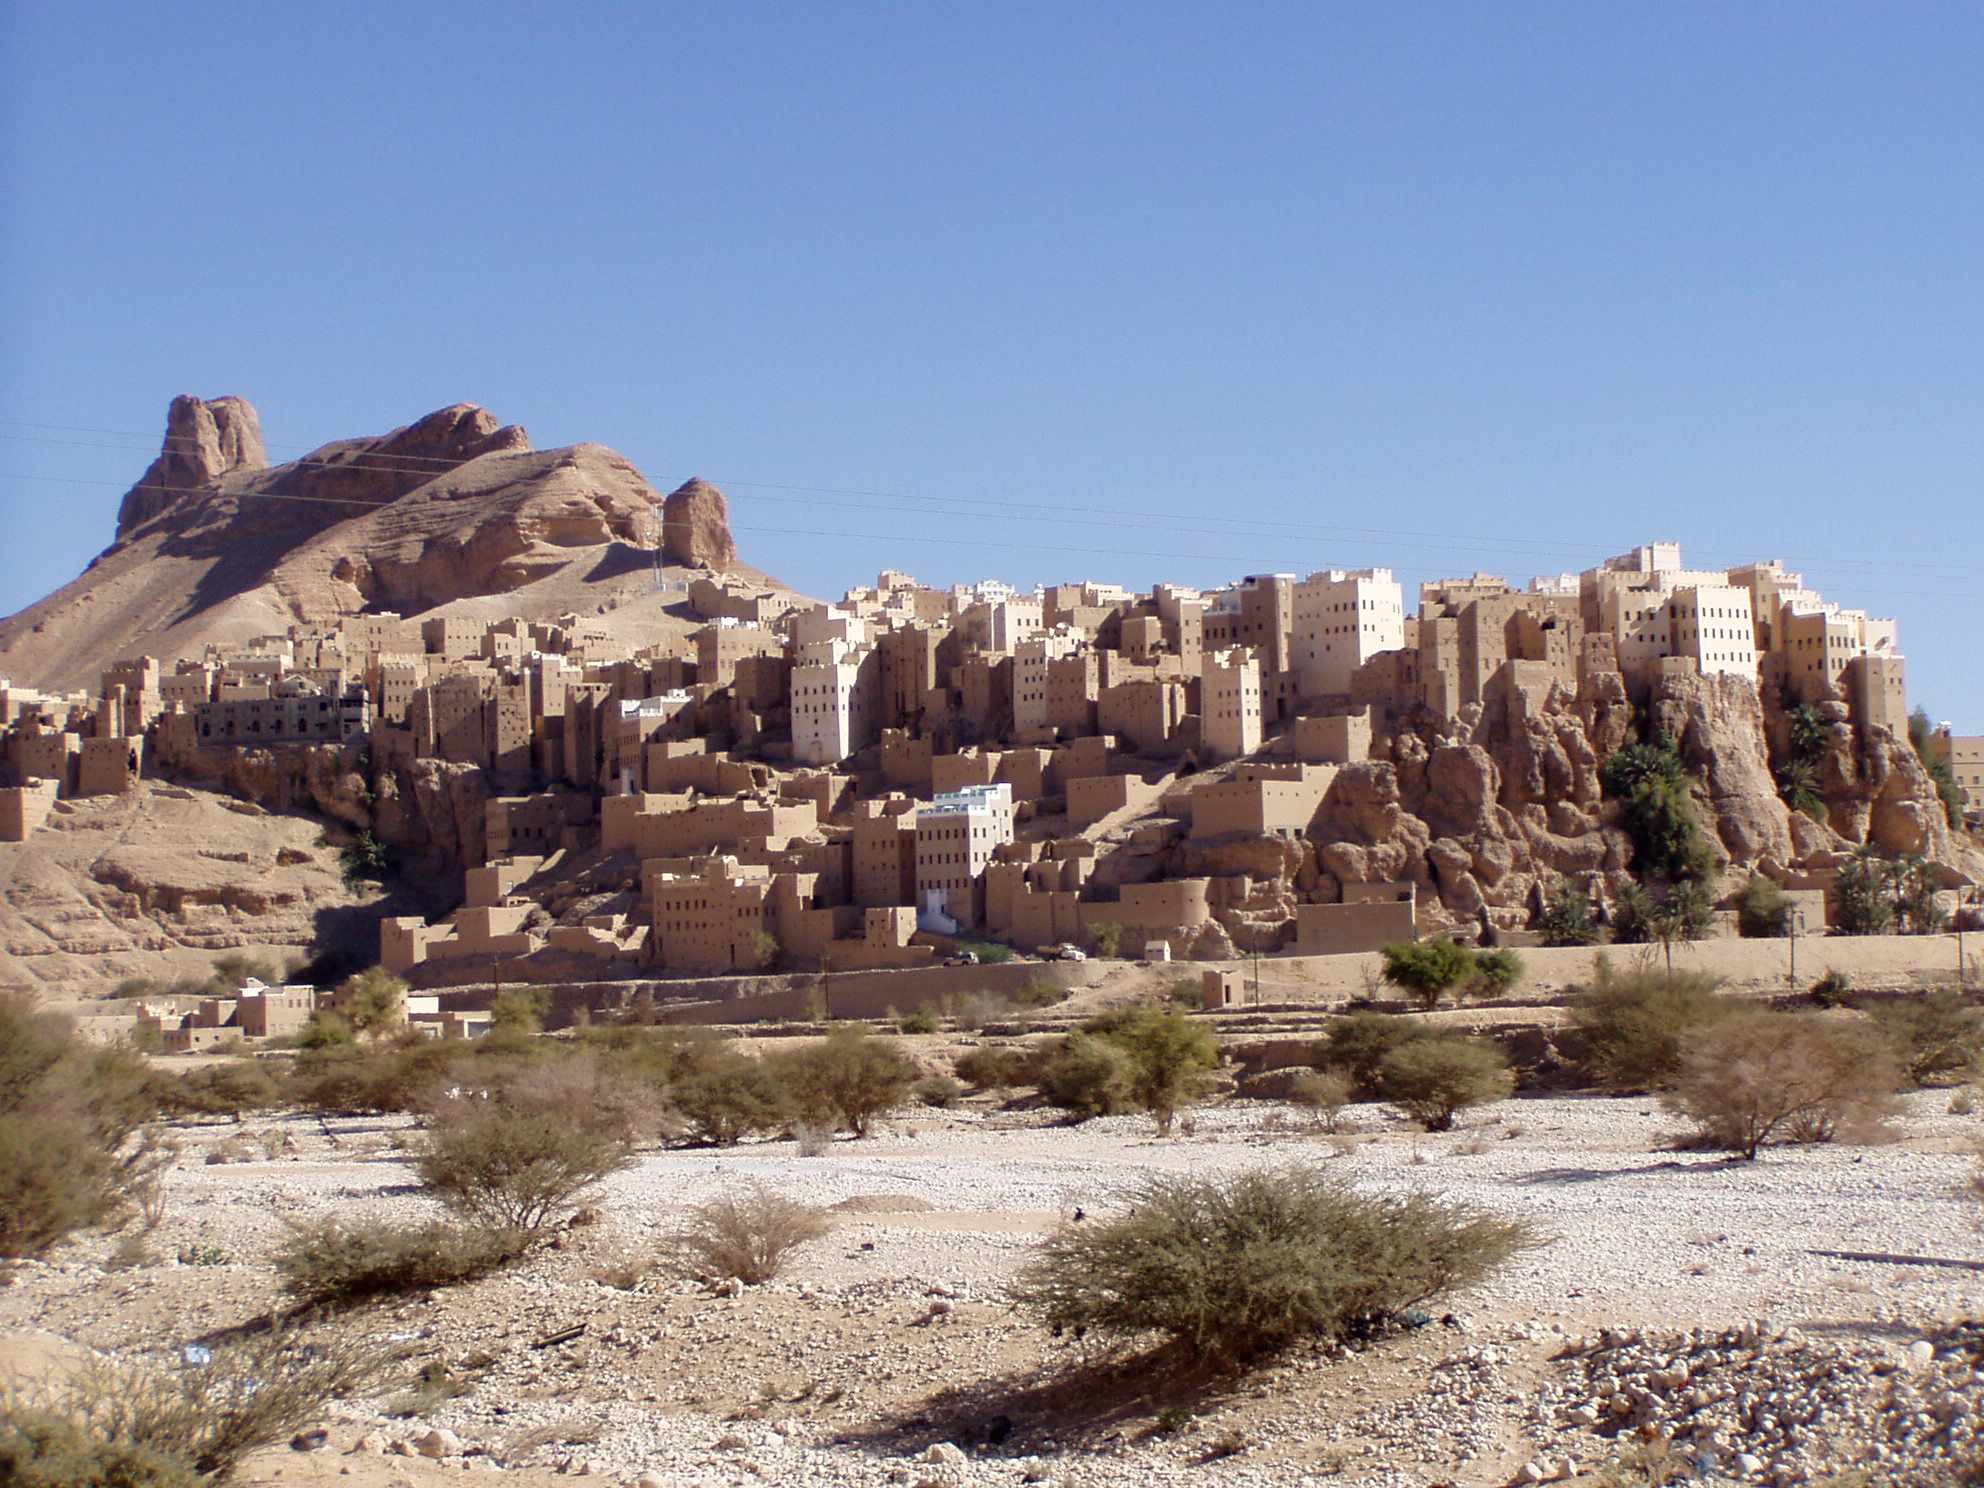 A incrível vila no Iêmen construída sobre um gigantesco bloco de rocha 150 de 2 metros de altura